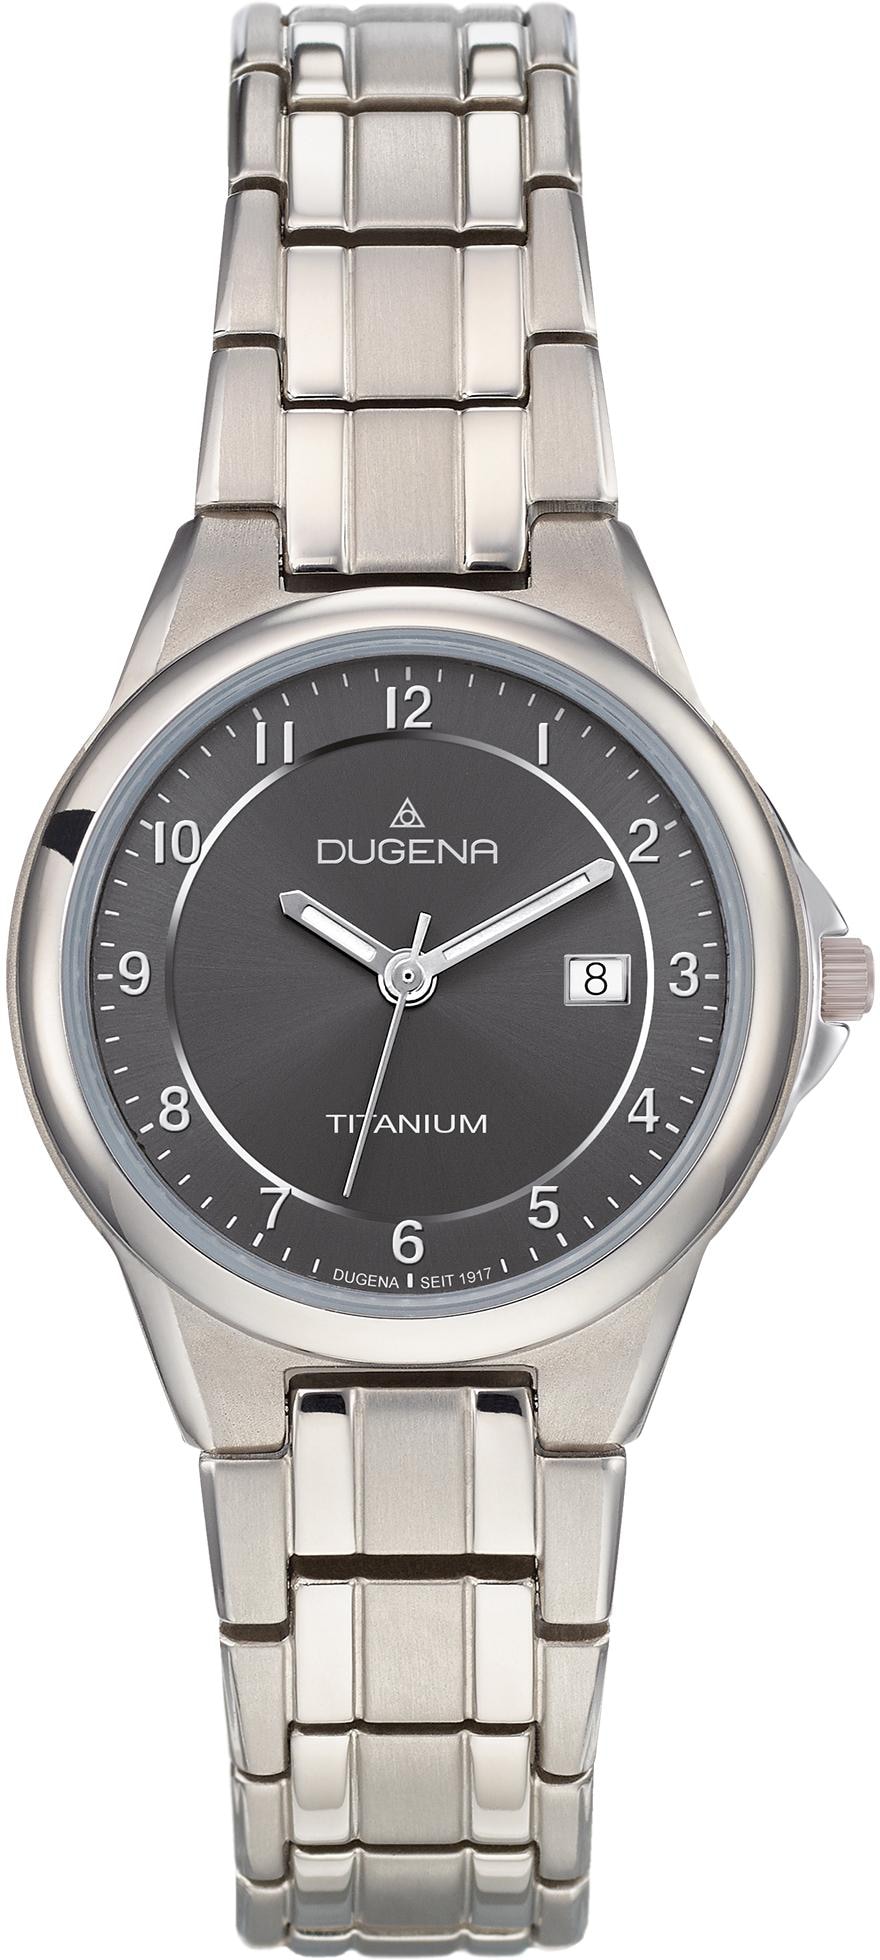 Online-Shop Dugena » kaufen Dugena Uhren | BAUR